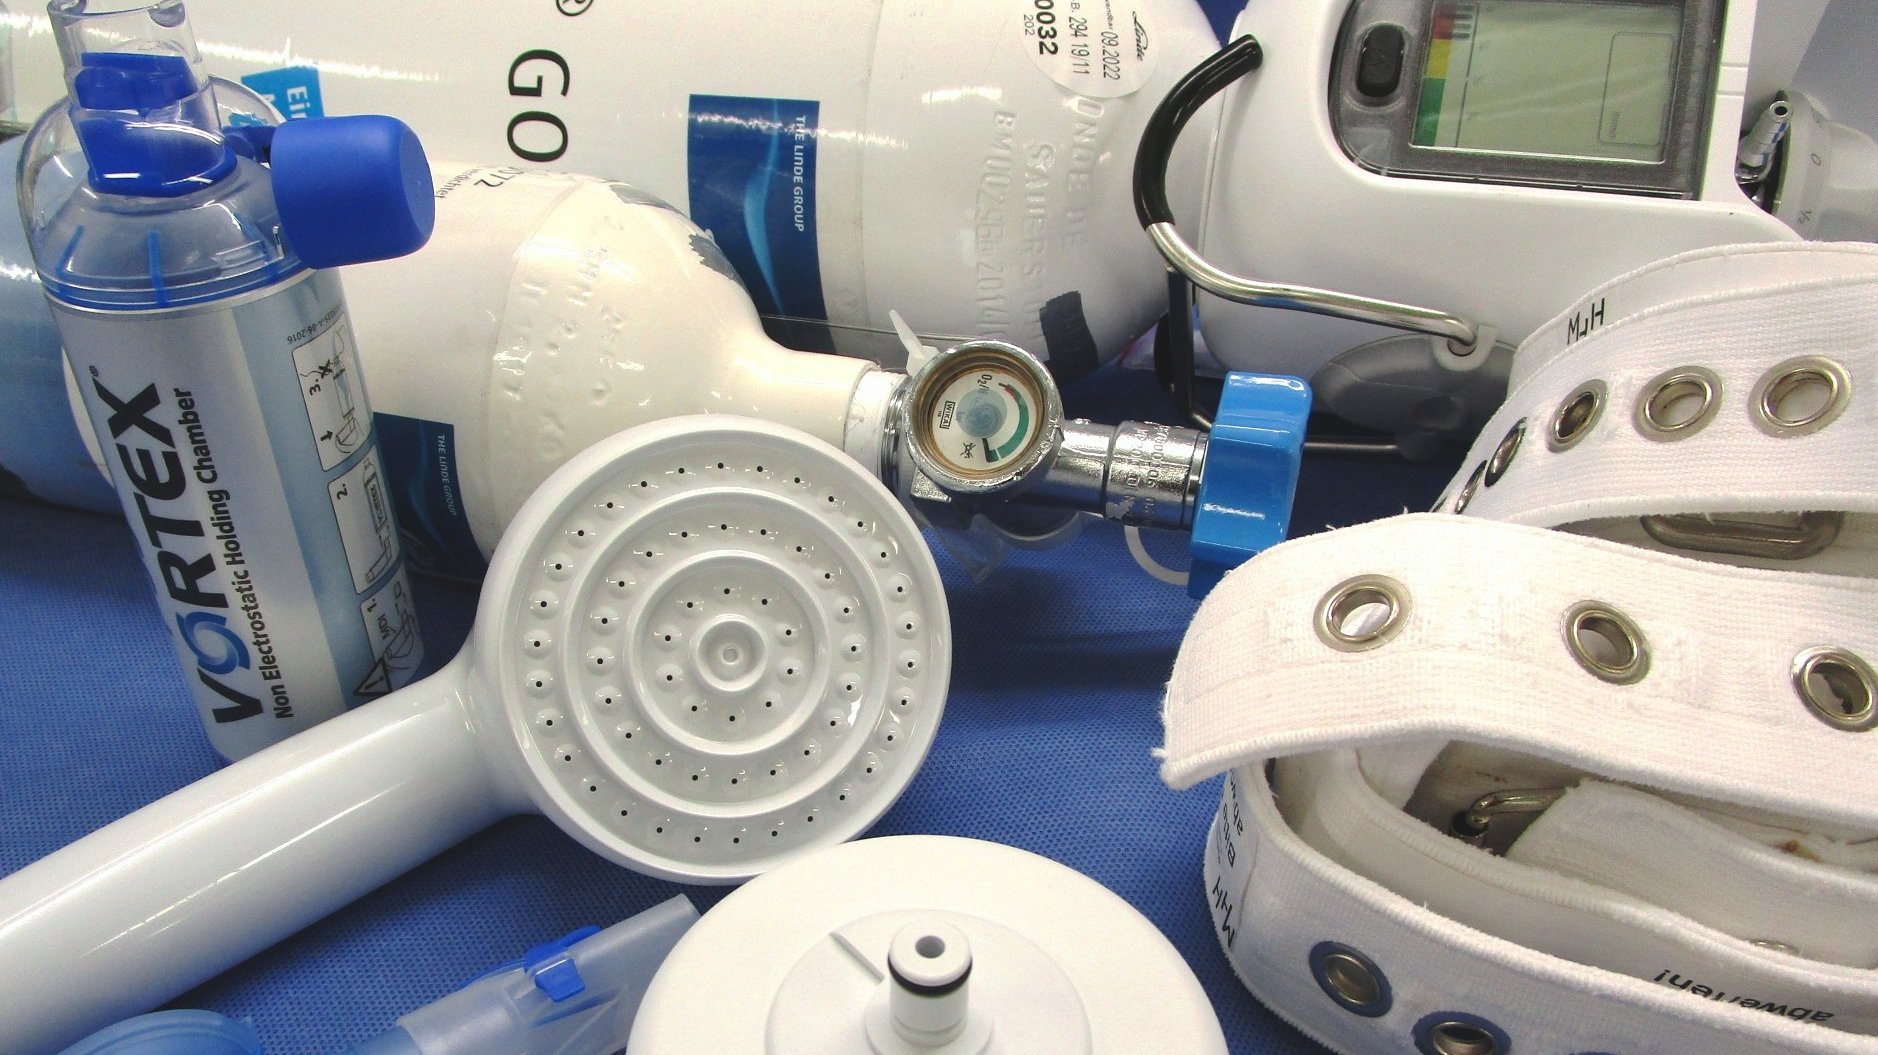 Sauerstoffflasche und andere Materialien, welche in der Abteilung desinfiziert werden